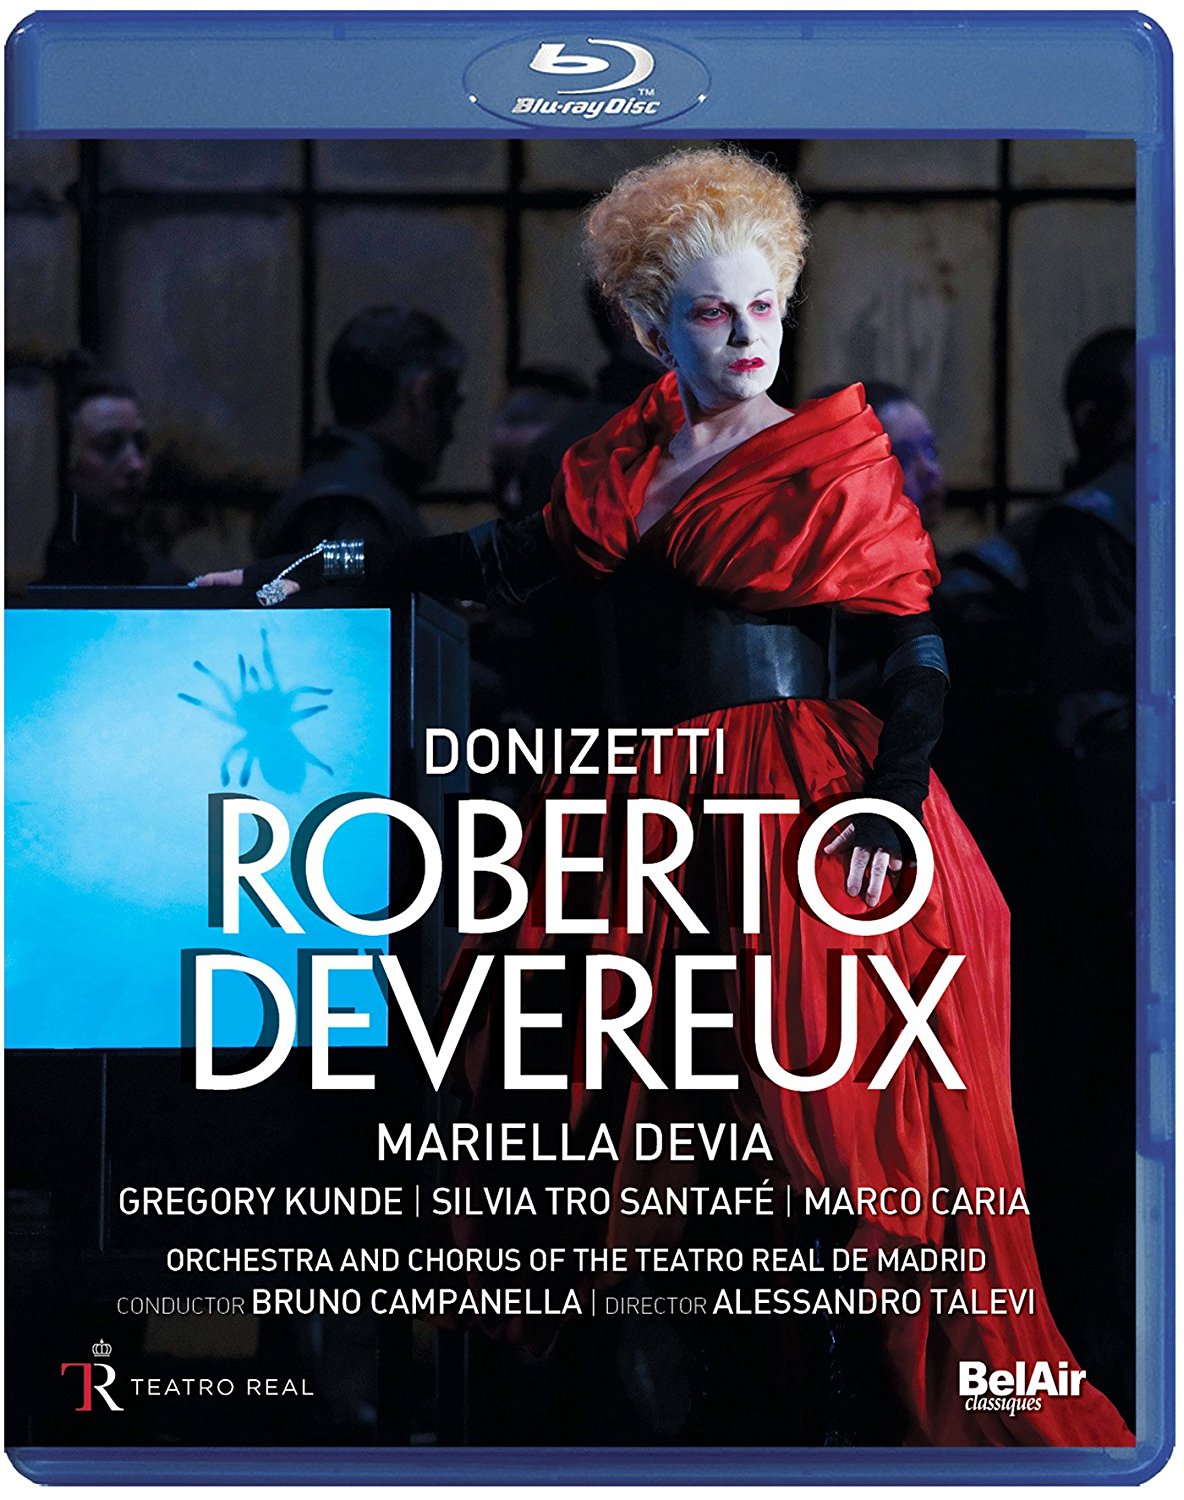 Music Blu-Ray Gaetano Donizetti - Roberto Devereux NUOVO SIGILLATO, EDIZIONE DEL 13/09/2016 SUBITO DISPONIBILE